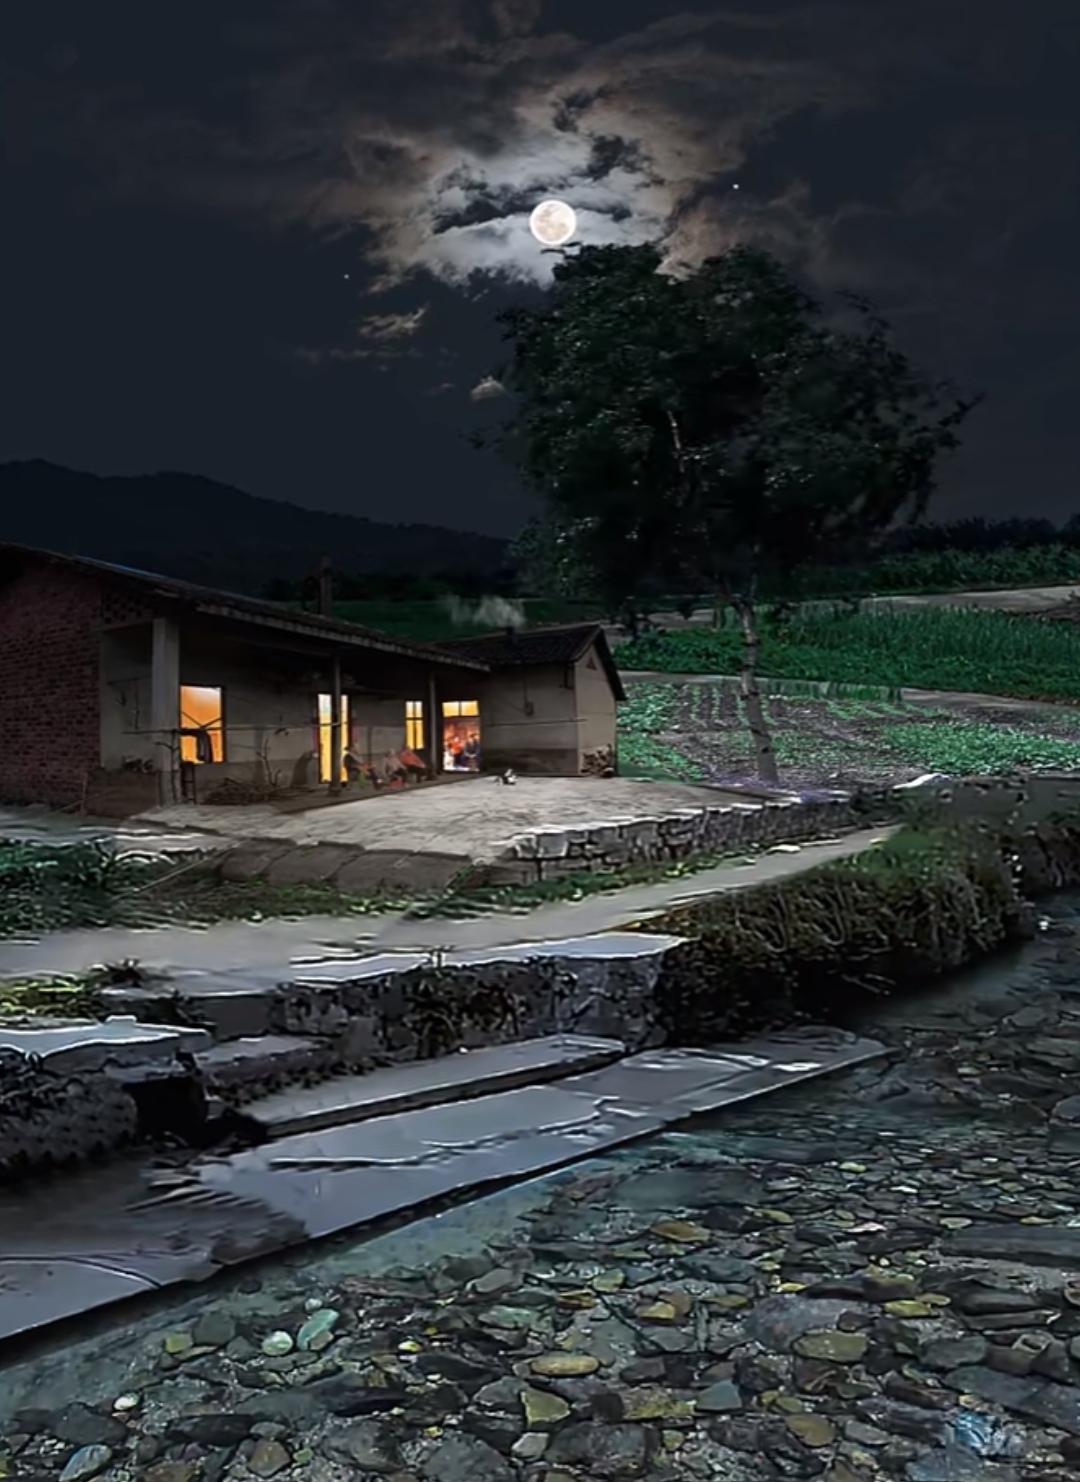 小溪流水依旧,月亮依旧升起,这片宁静的农村夜景也将延续下去